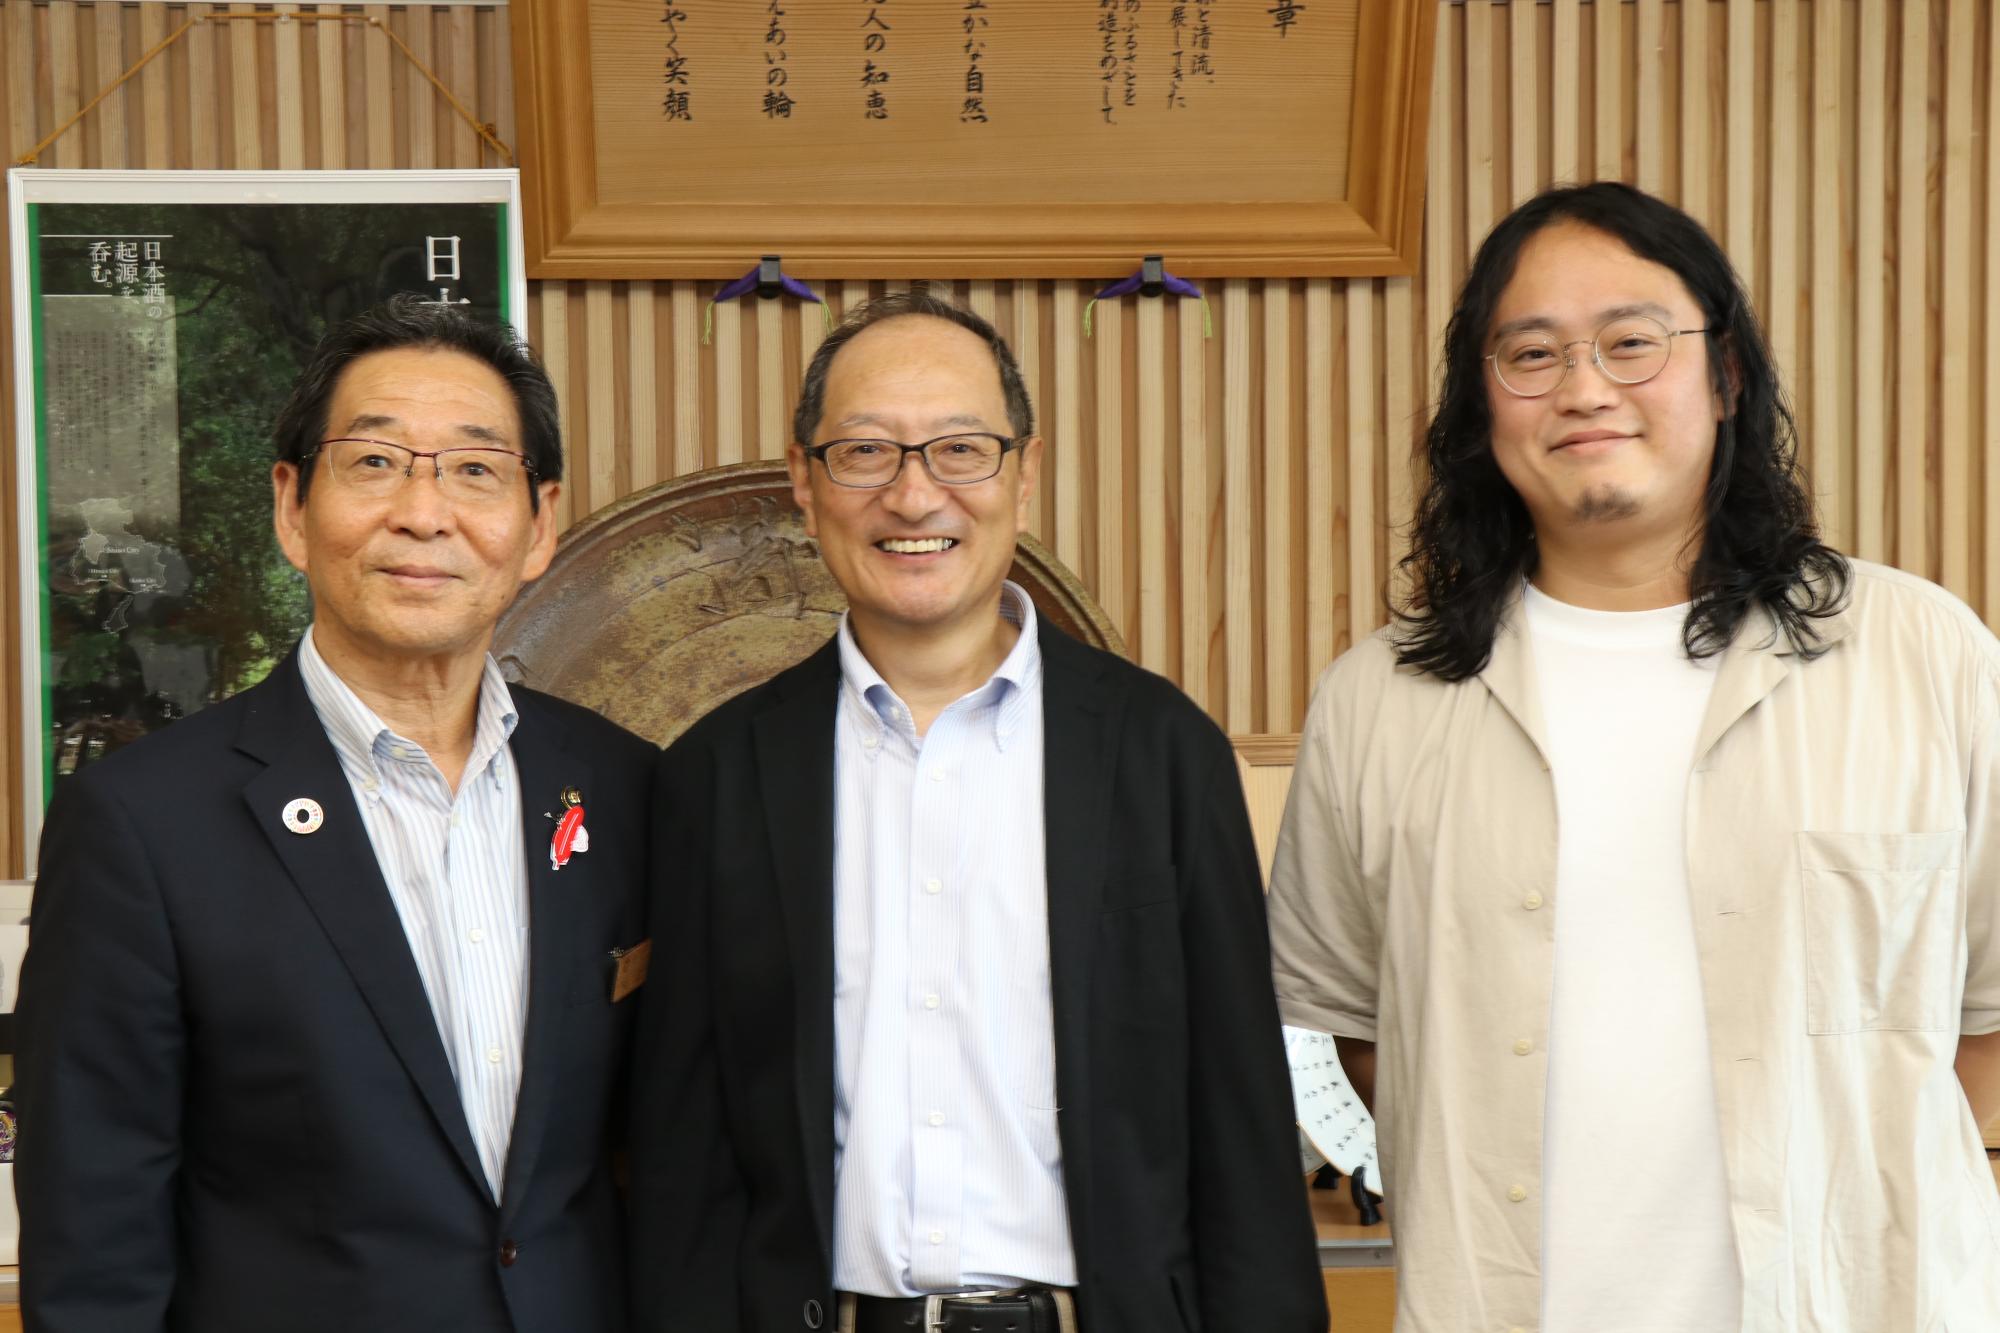 9月末で退任となった地域再生協働員の坂口さんと地域おこし協力隊の林さんが市長と並んで笑顔を見せている写真